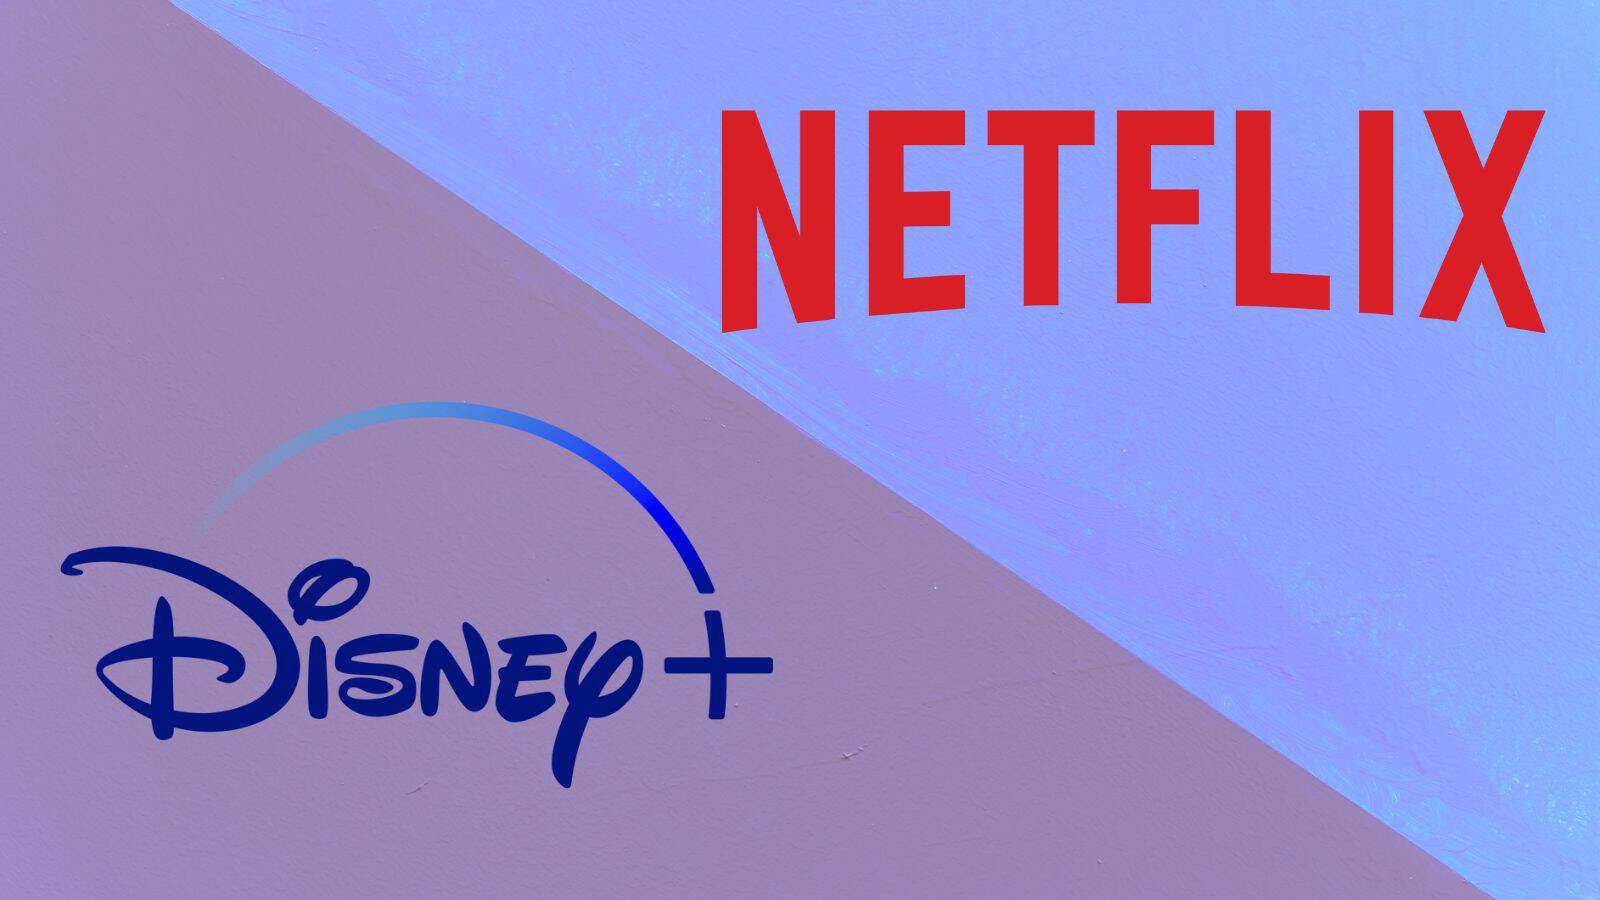 Netflix e Disney+: utenti e download crollati, cosa succede? 